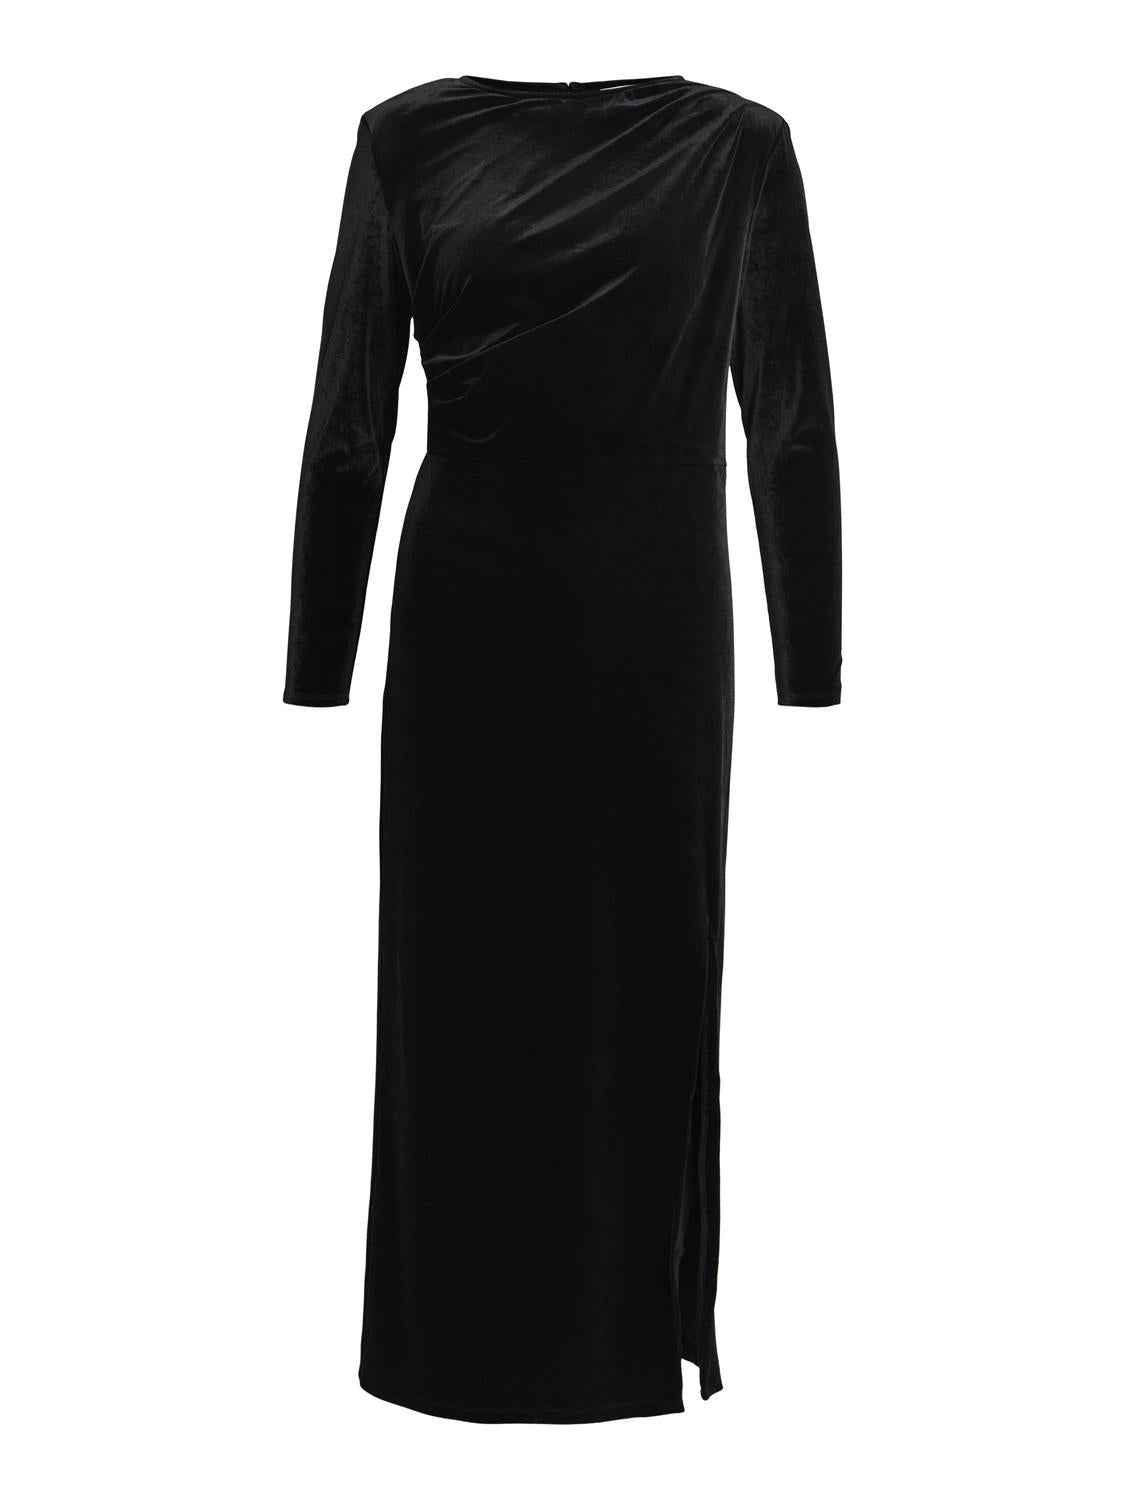 OBJBIANCA Dress - Black